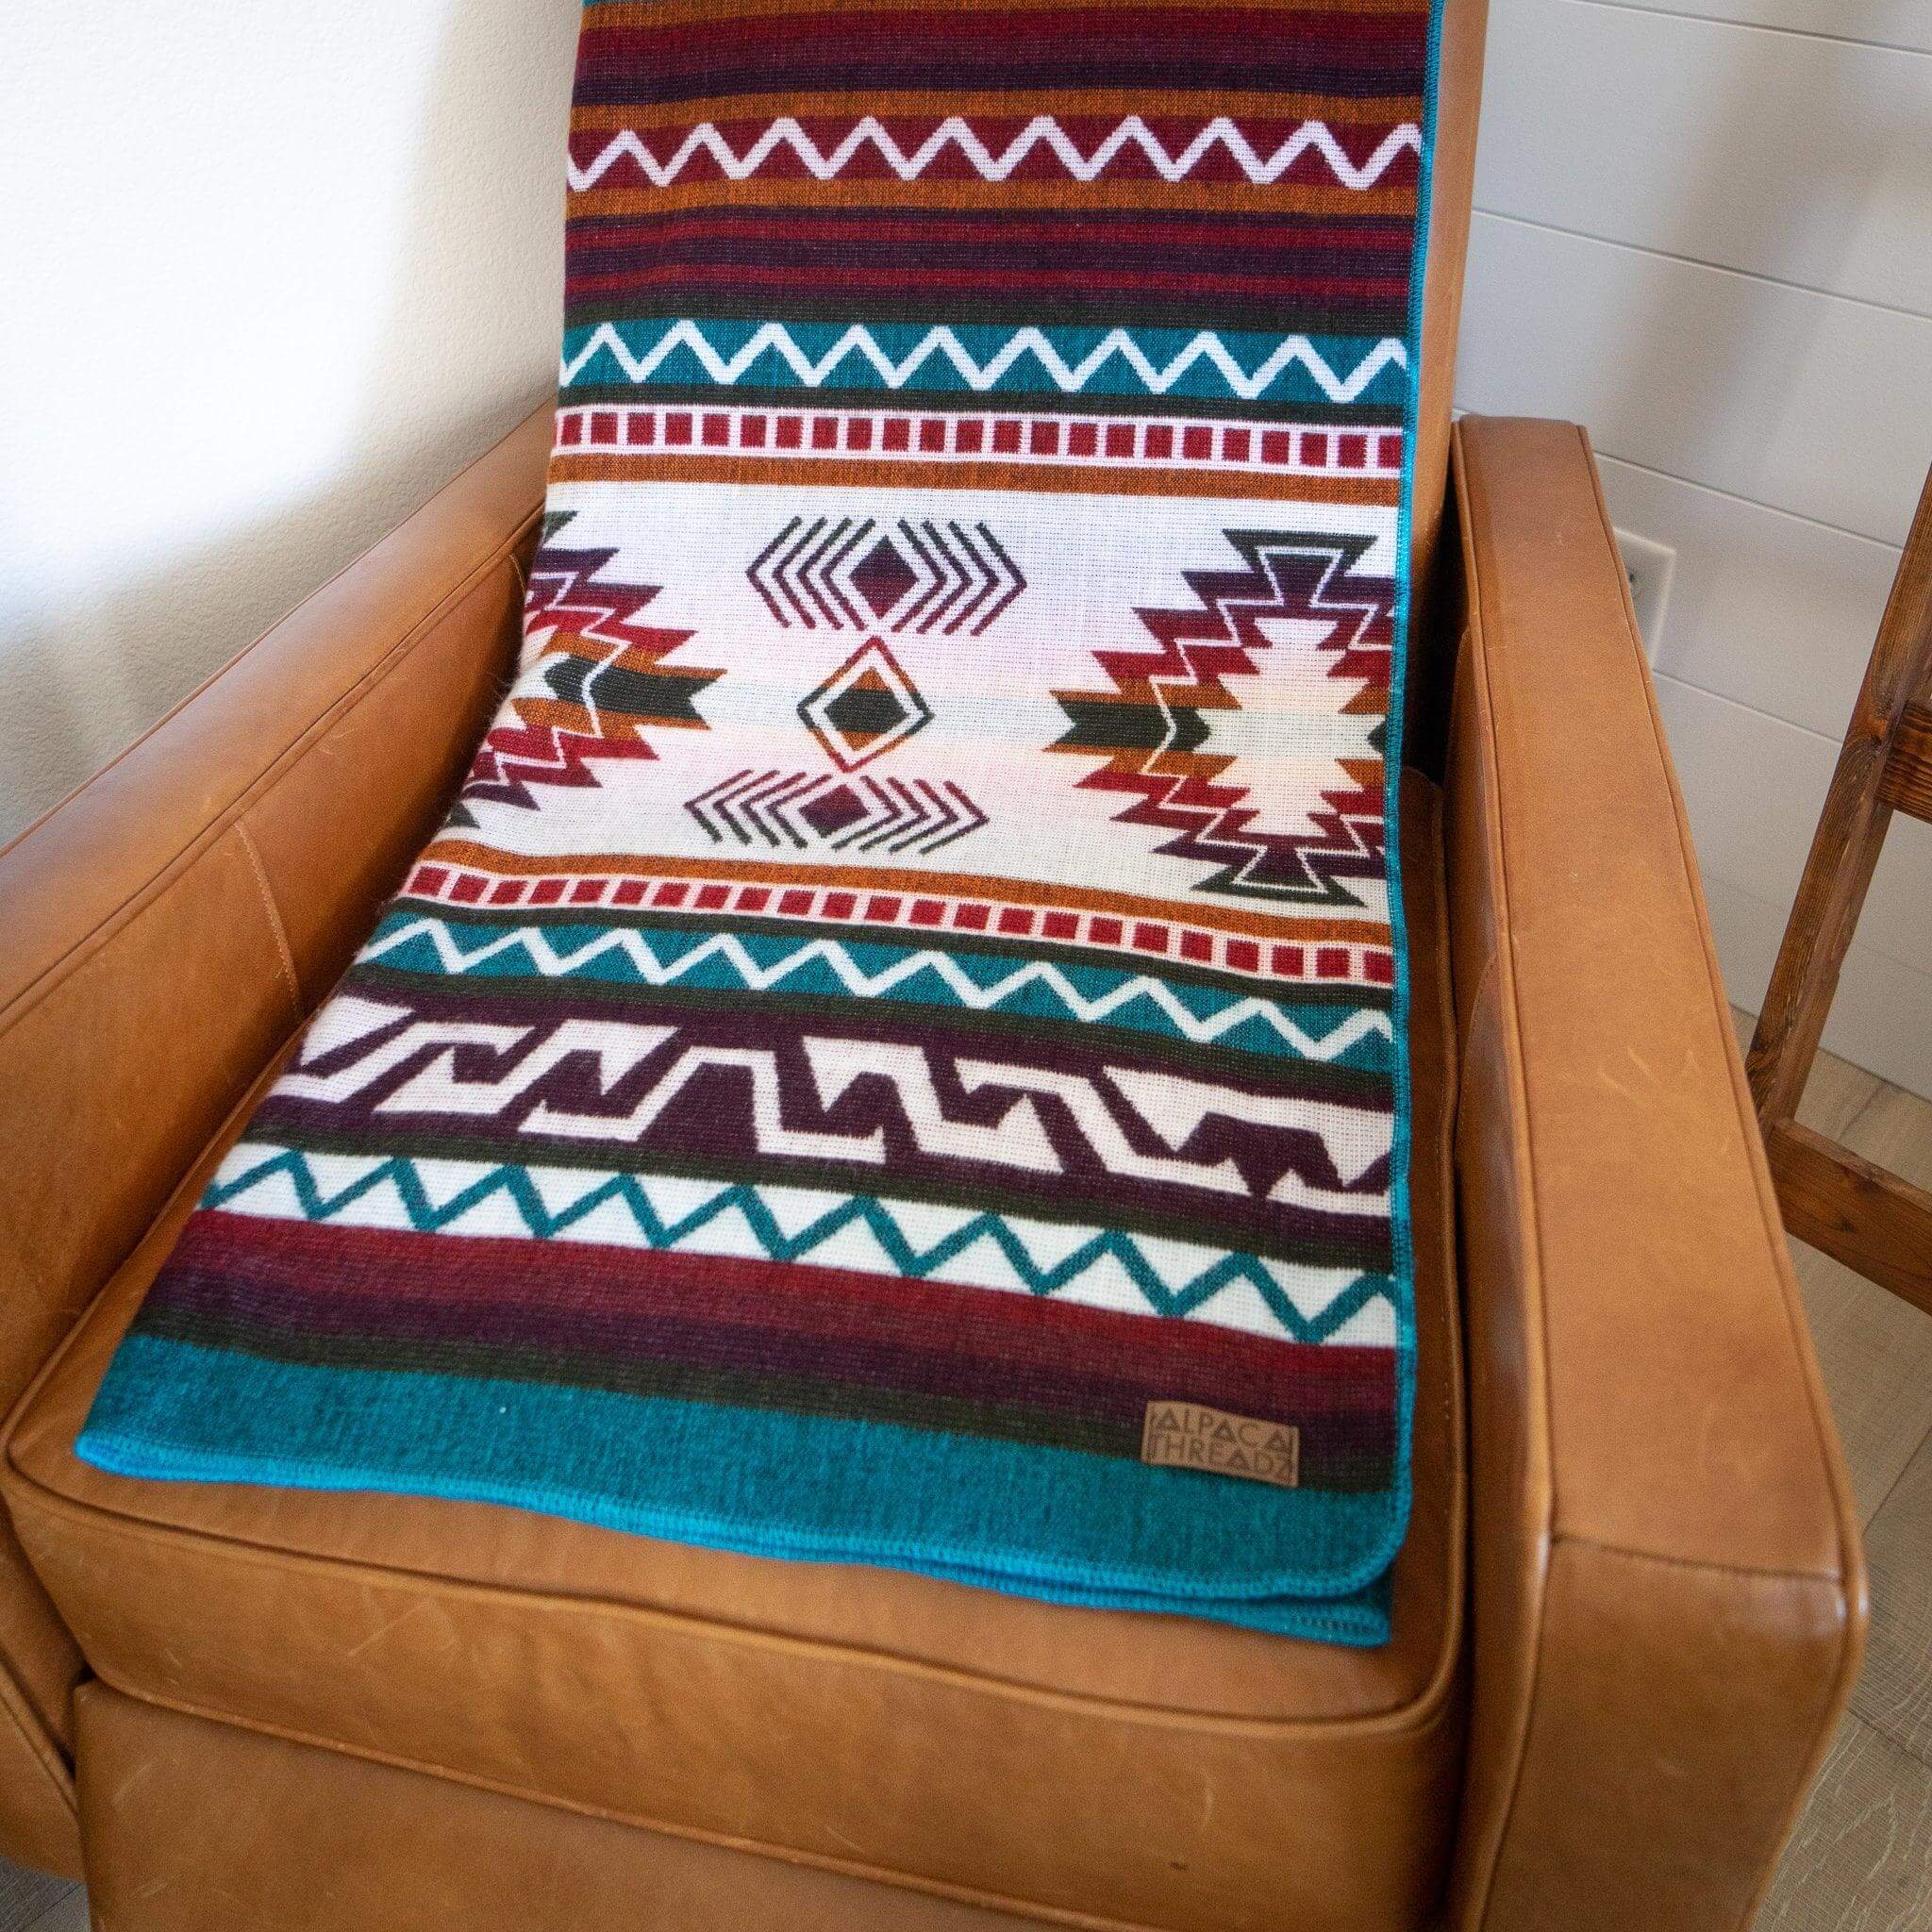 Alpaca blanket on brown armchair